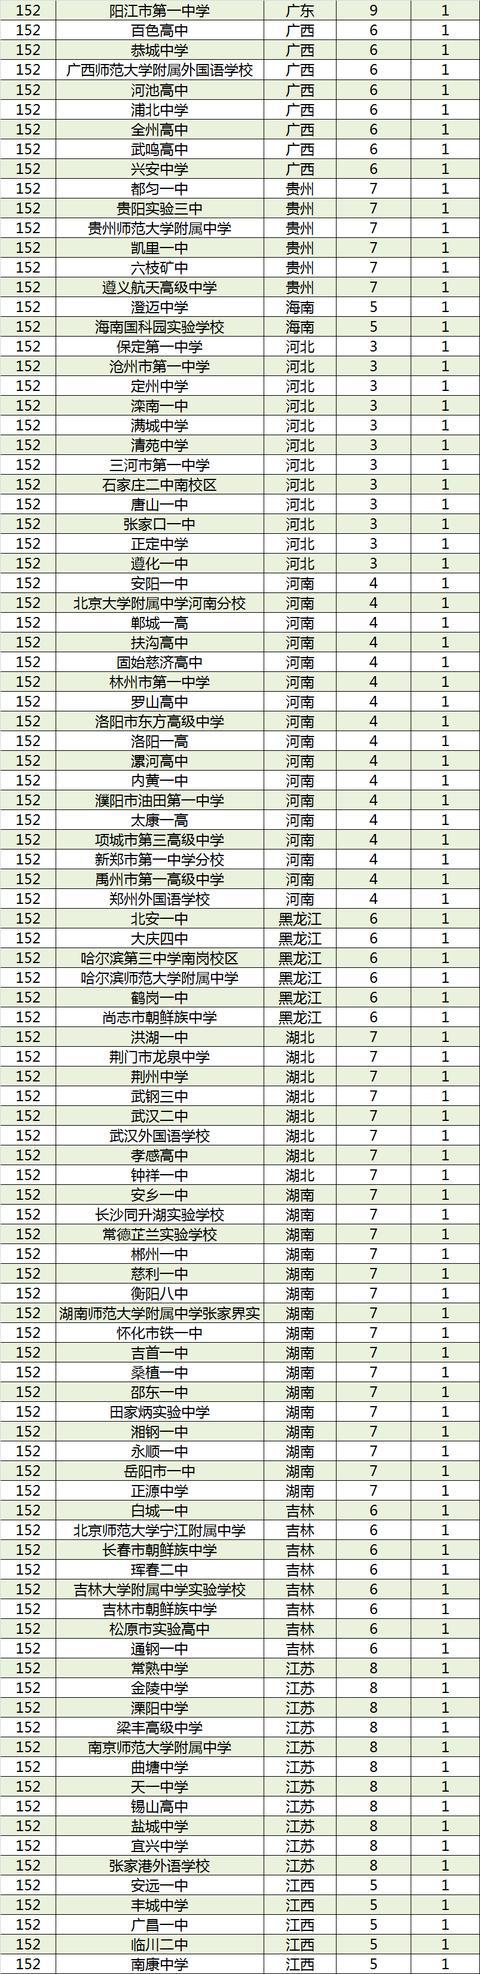 2017中国顶尖中学排行榜